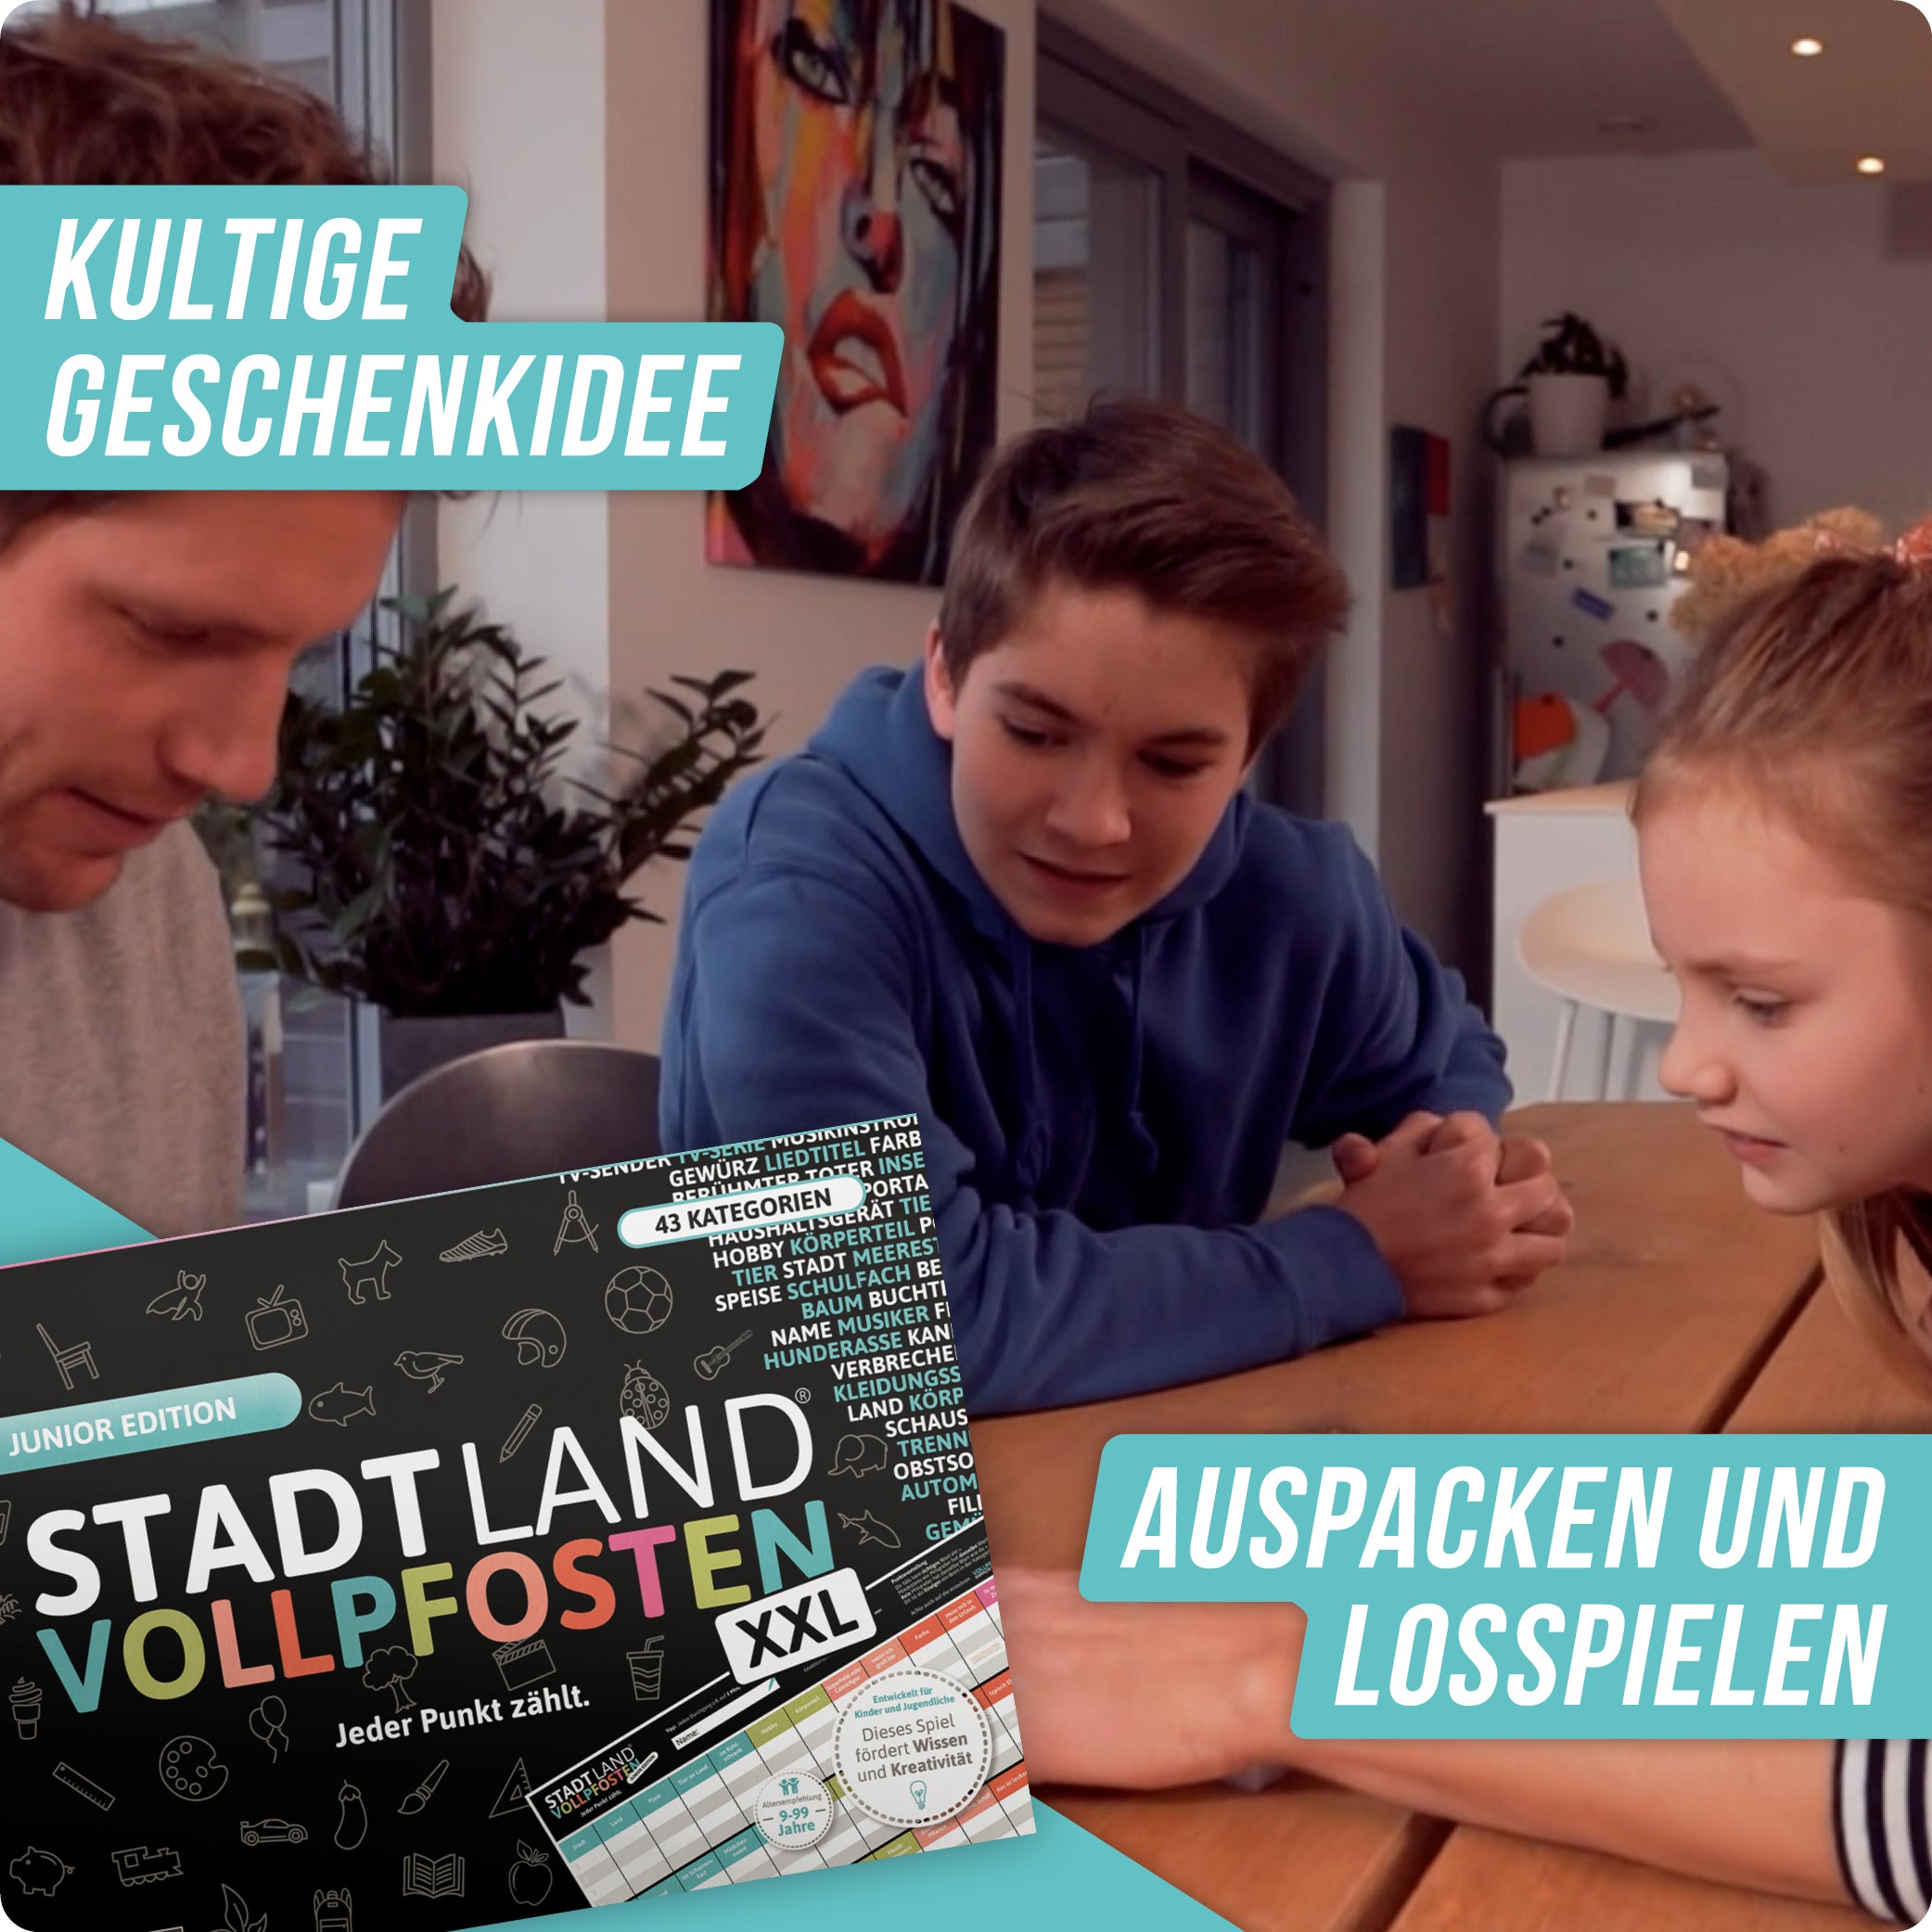 Stadt Land Vollpfosten® Junior Edition – "Jeder Punkt zählt." | A3 Spielblock